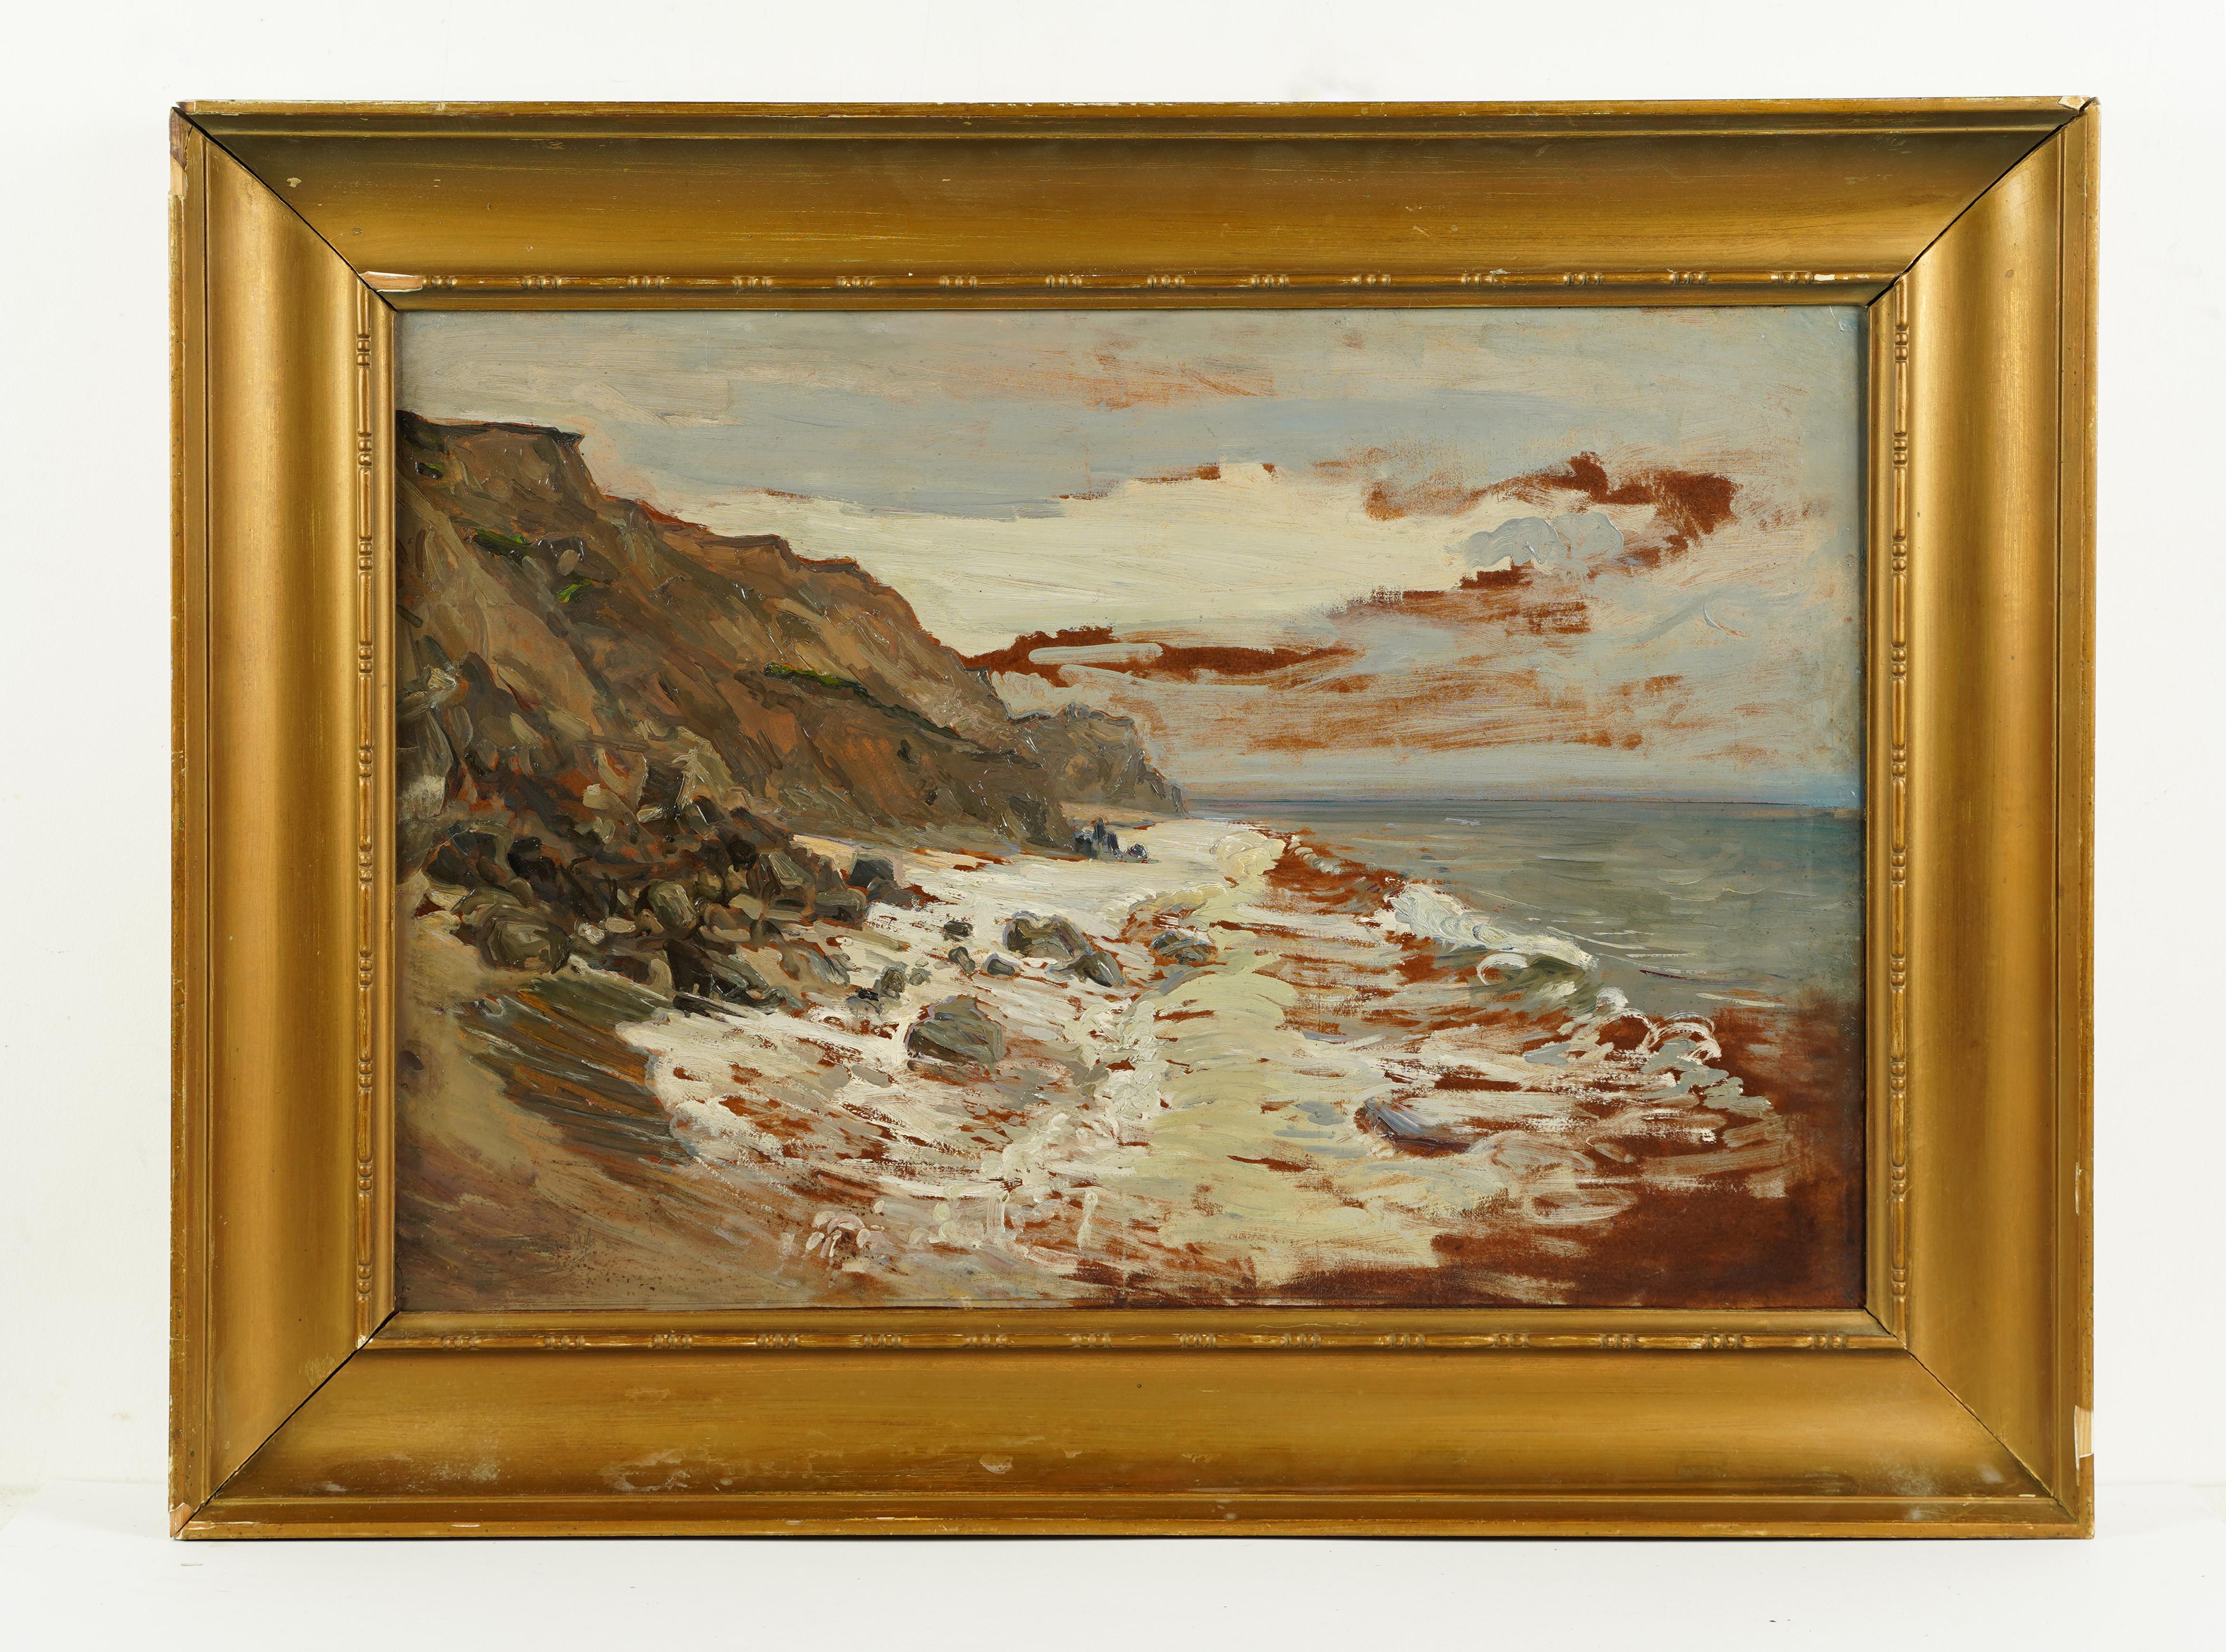  Antikes gerahmtes Ölgemälde, Französische Schule, signiert Barbizon, Meereslandschaft, Strandszene (Impressionismus), Painting, von Unknown